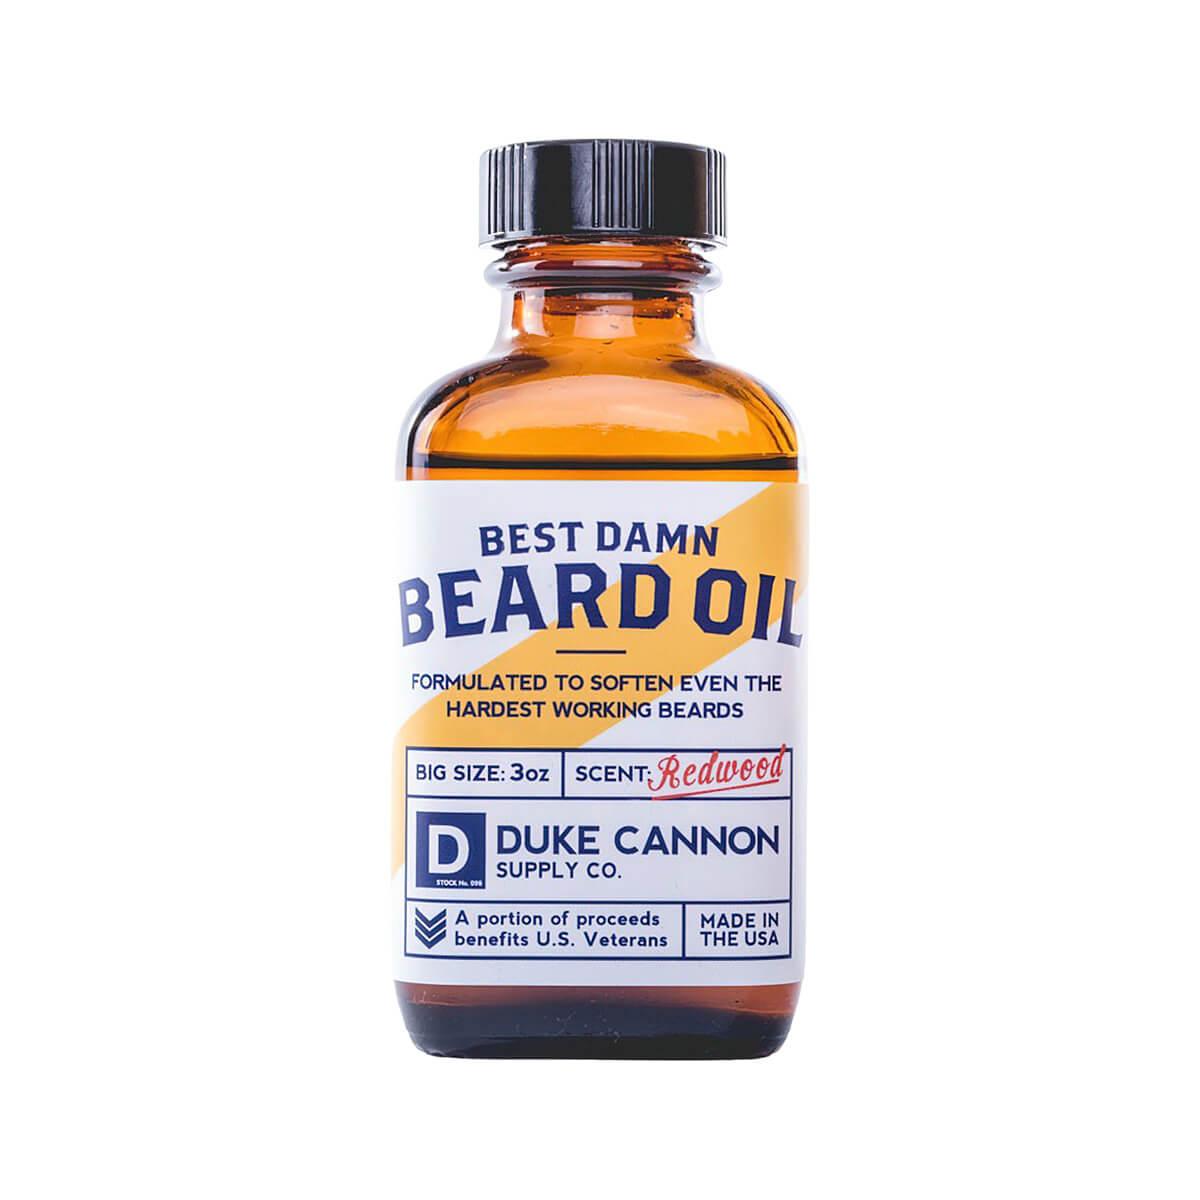  Best Darn Beard Oil